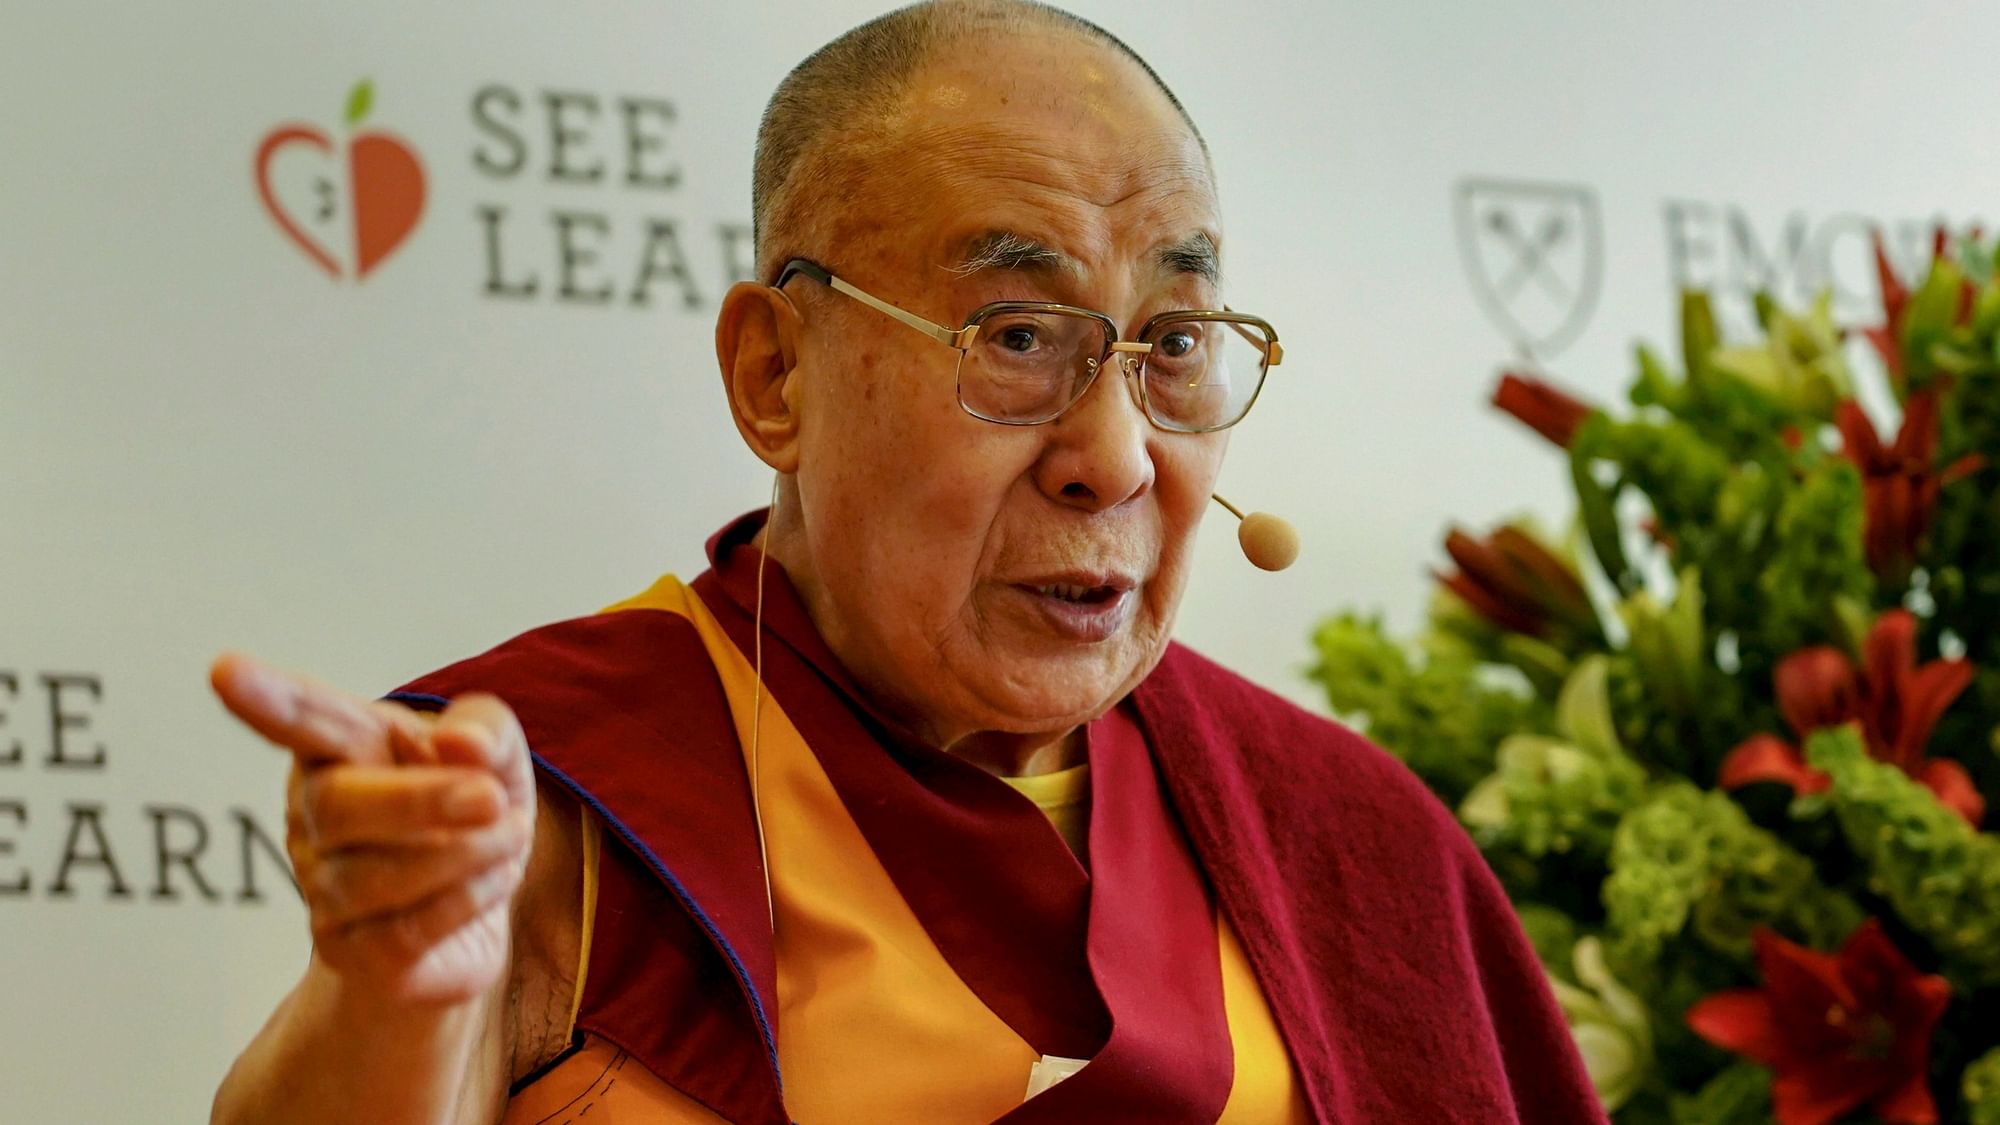 Tibetan spiritual leader the Dalai Lama.